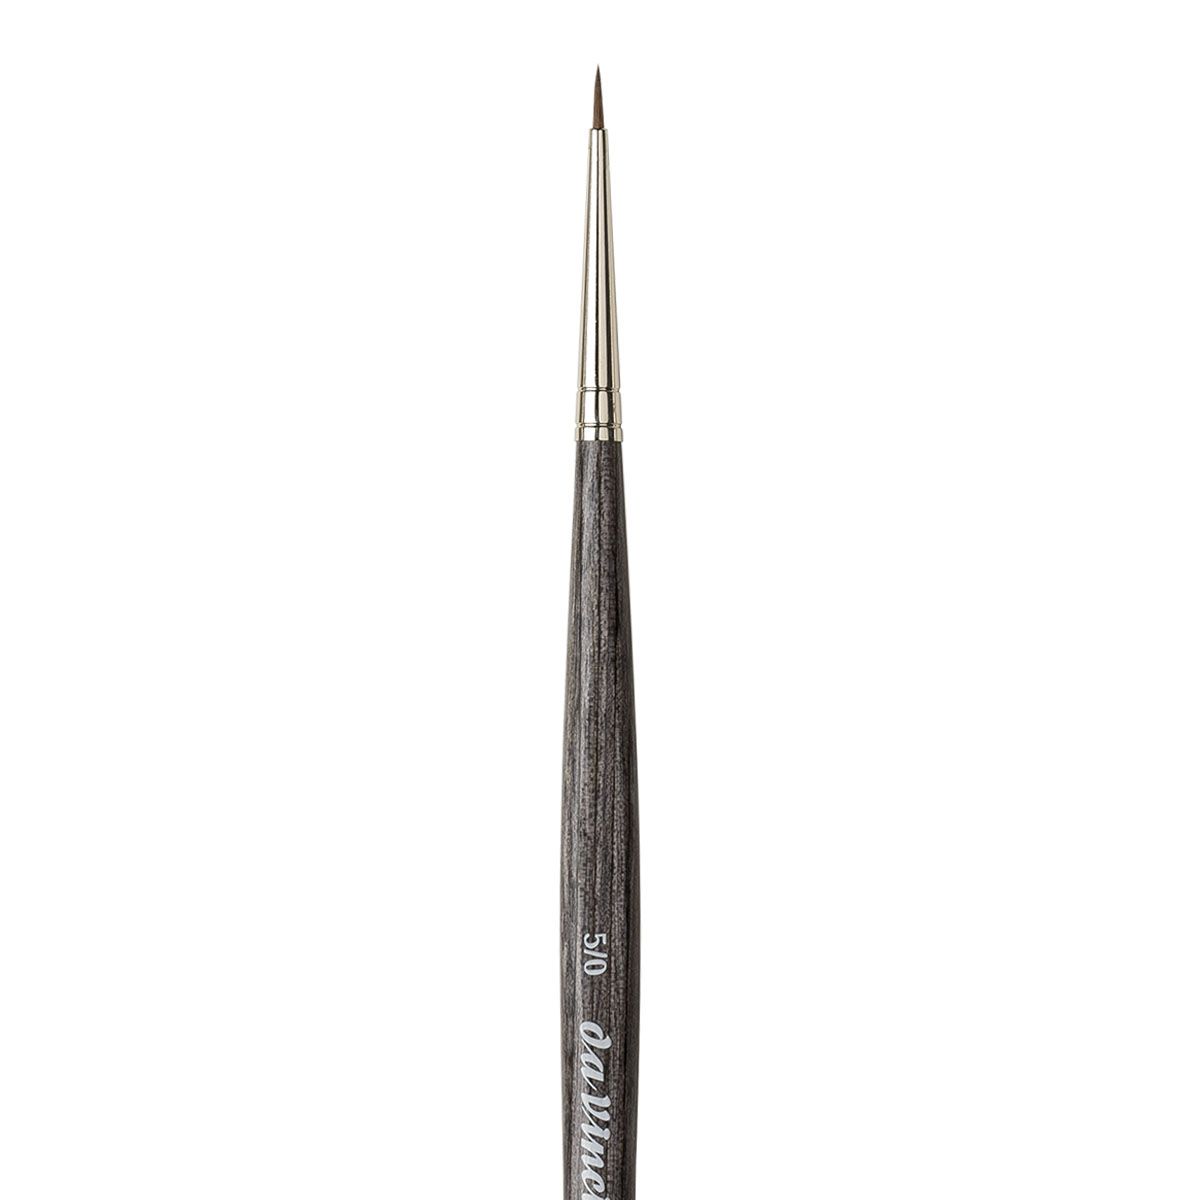 Da Vinci Colineo Series 5522 Synthetic Kolinsky Brush, Size 4 Flat